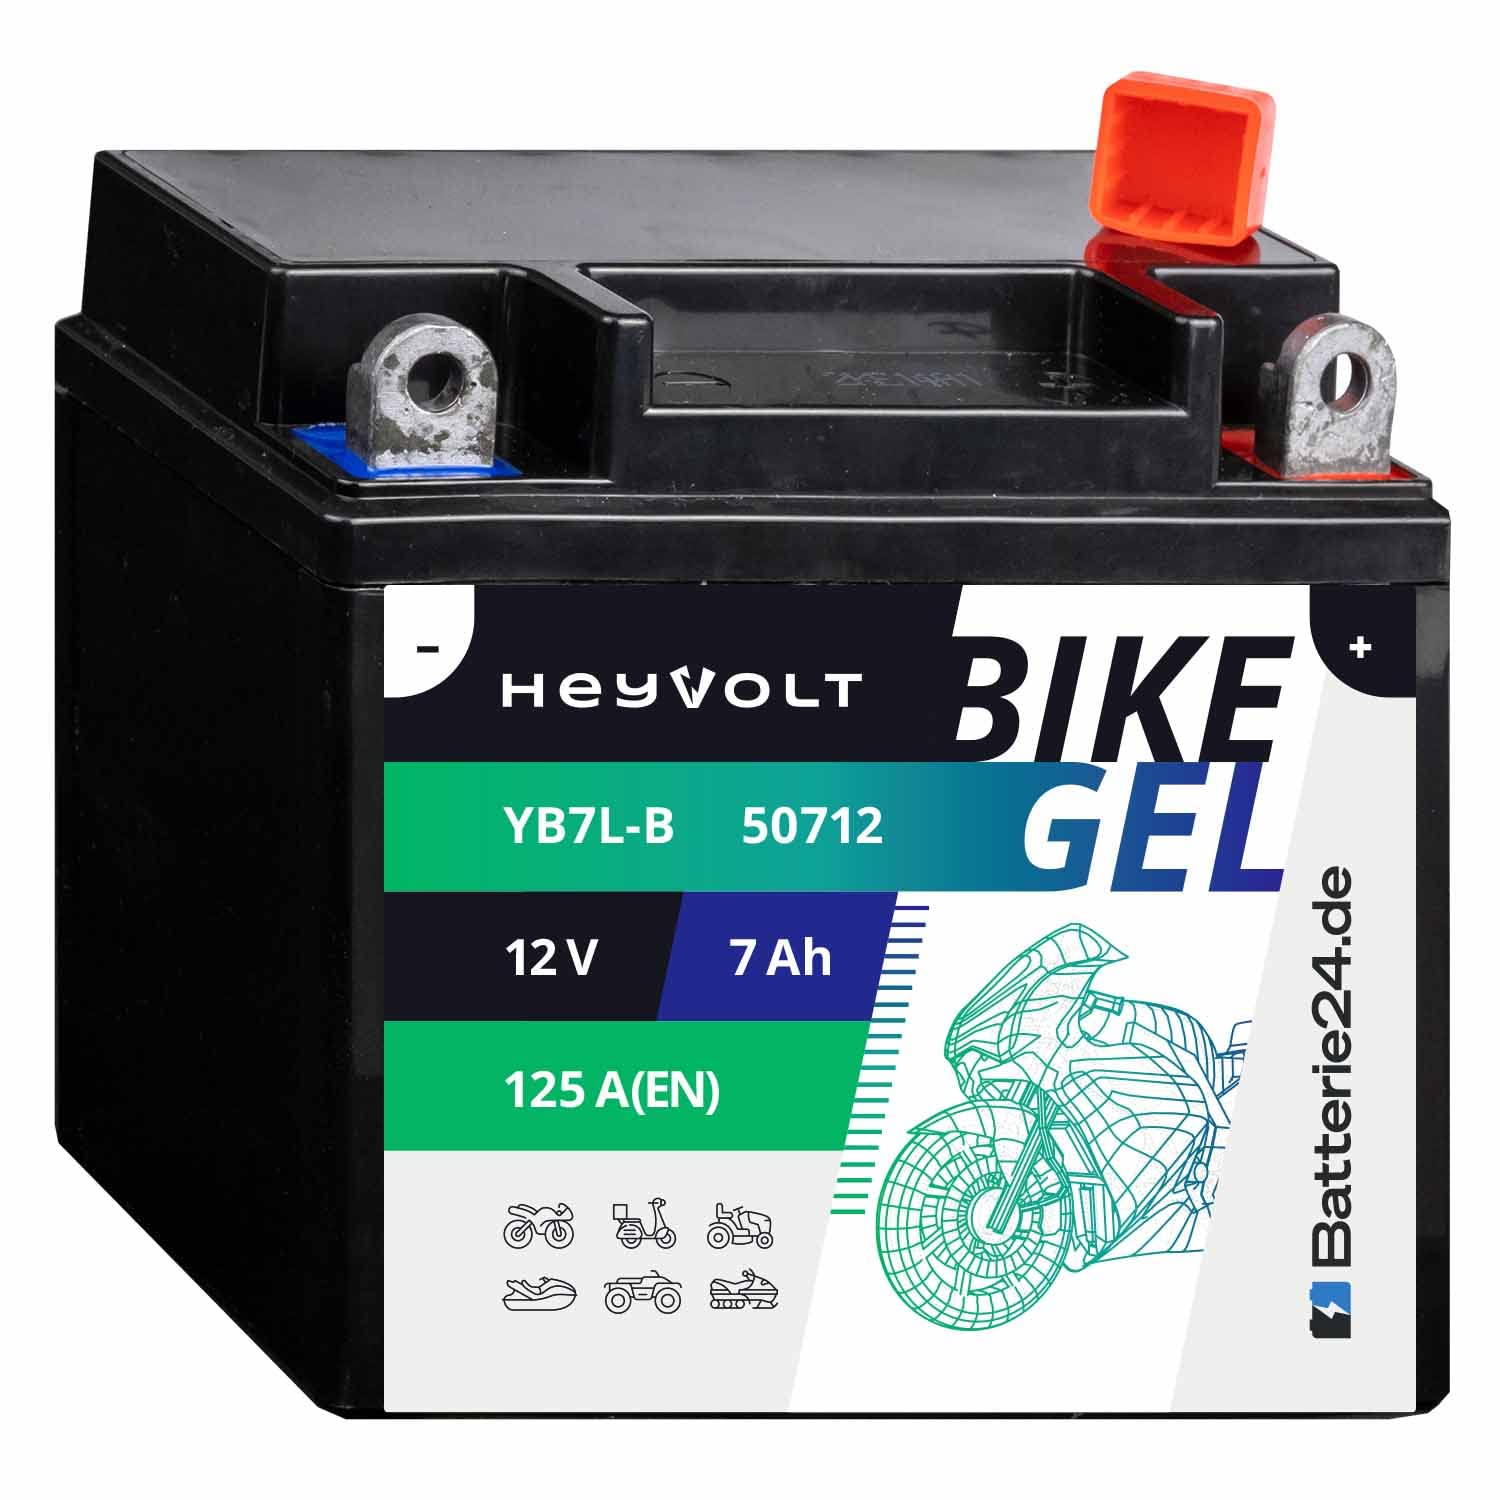 HeyVolt GEL Motorradbatterie 12V 7Ah YB7L-B FB7L-B CB7L-B EB7L-B 50712 von Batterie24.de